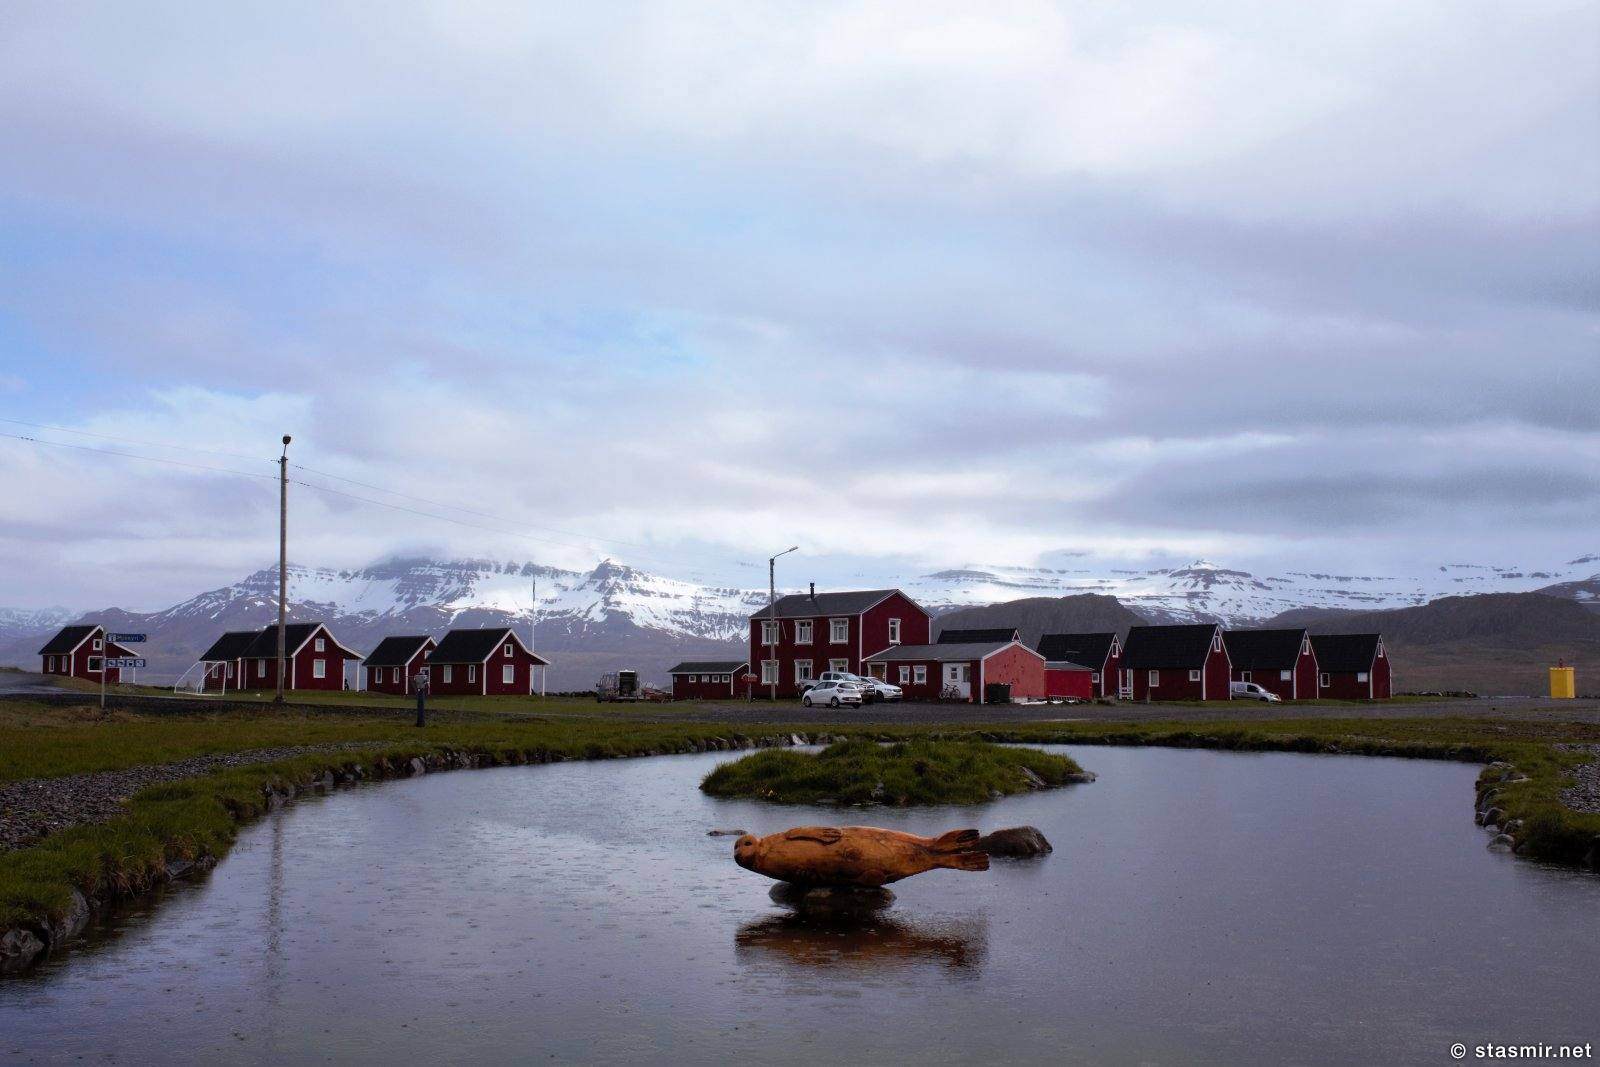 Mjóeyri рядом с городком Эскифьордюр, где была китовая станция в Восточных Фьордах, фото Стасмир, photo Stasmir